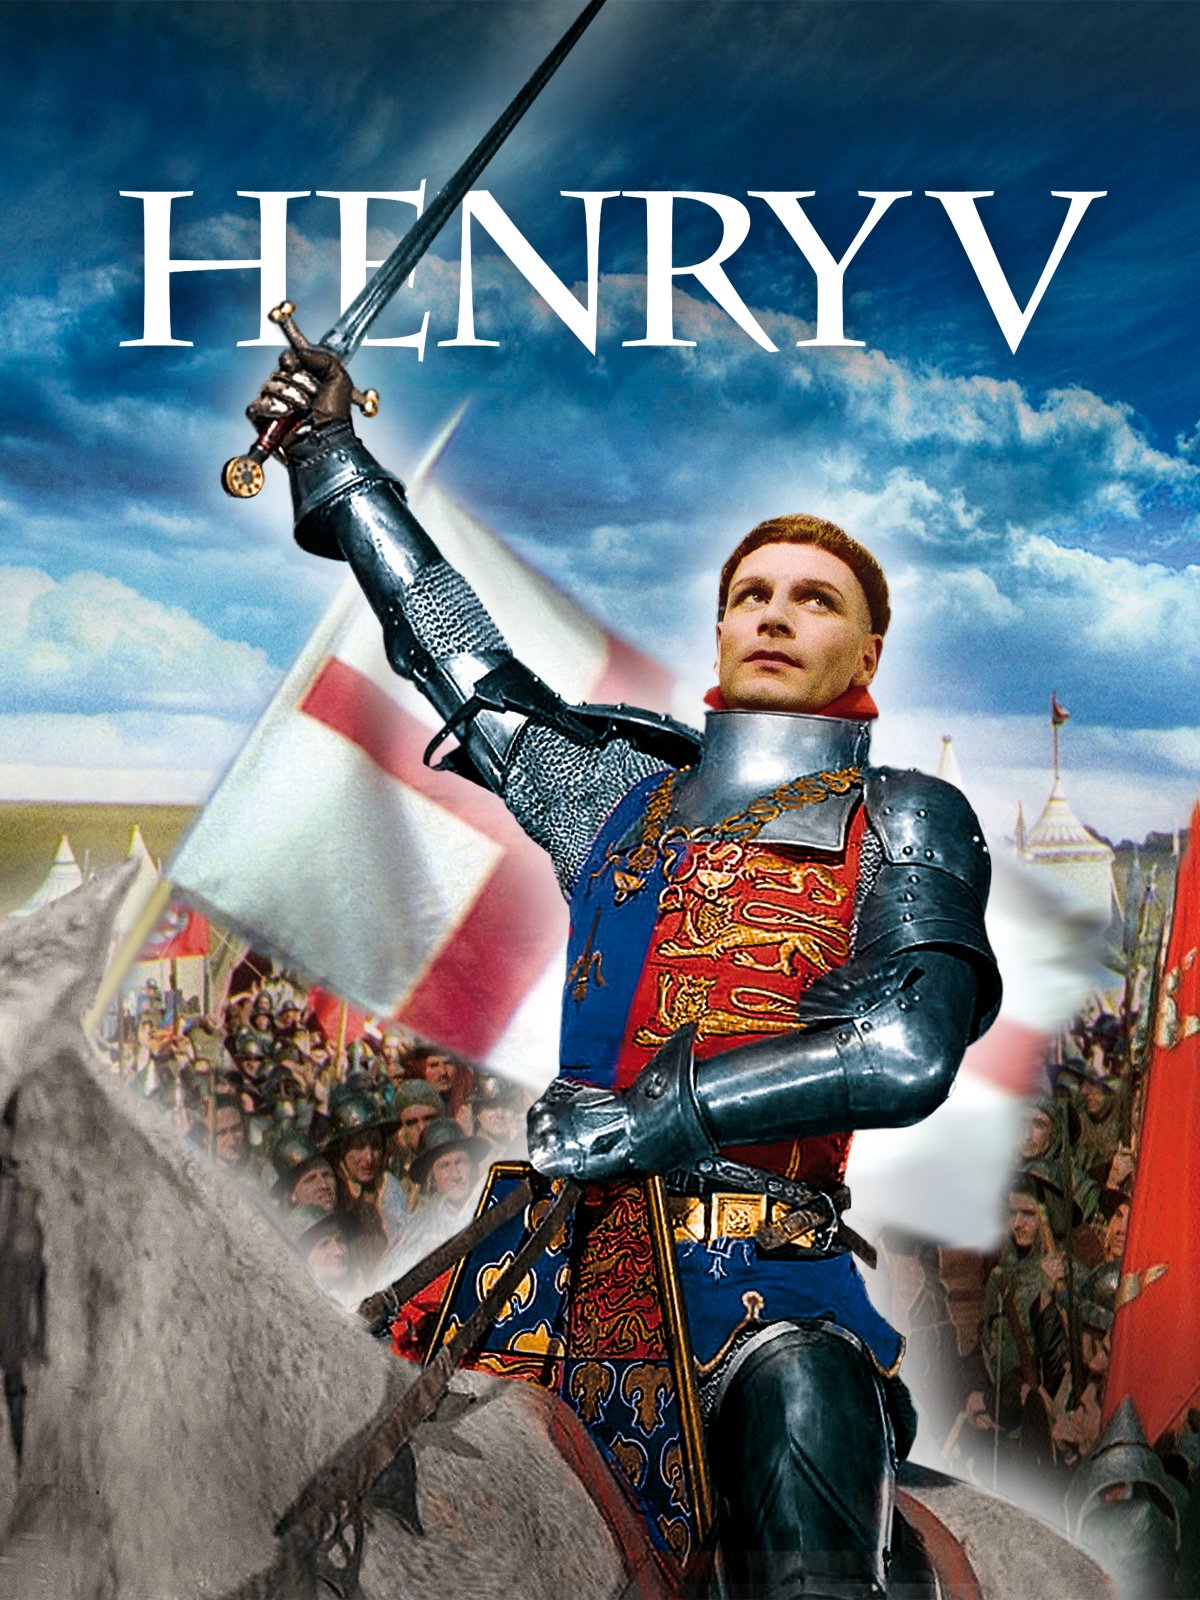 henry v movie review